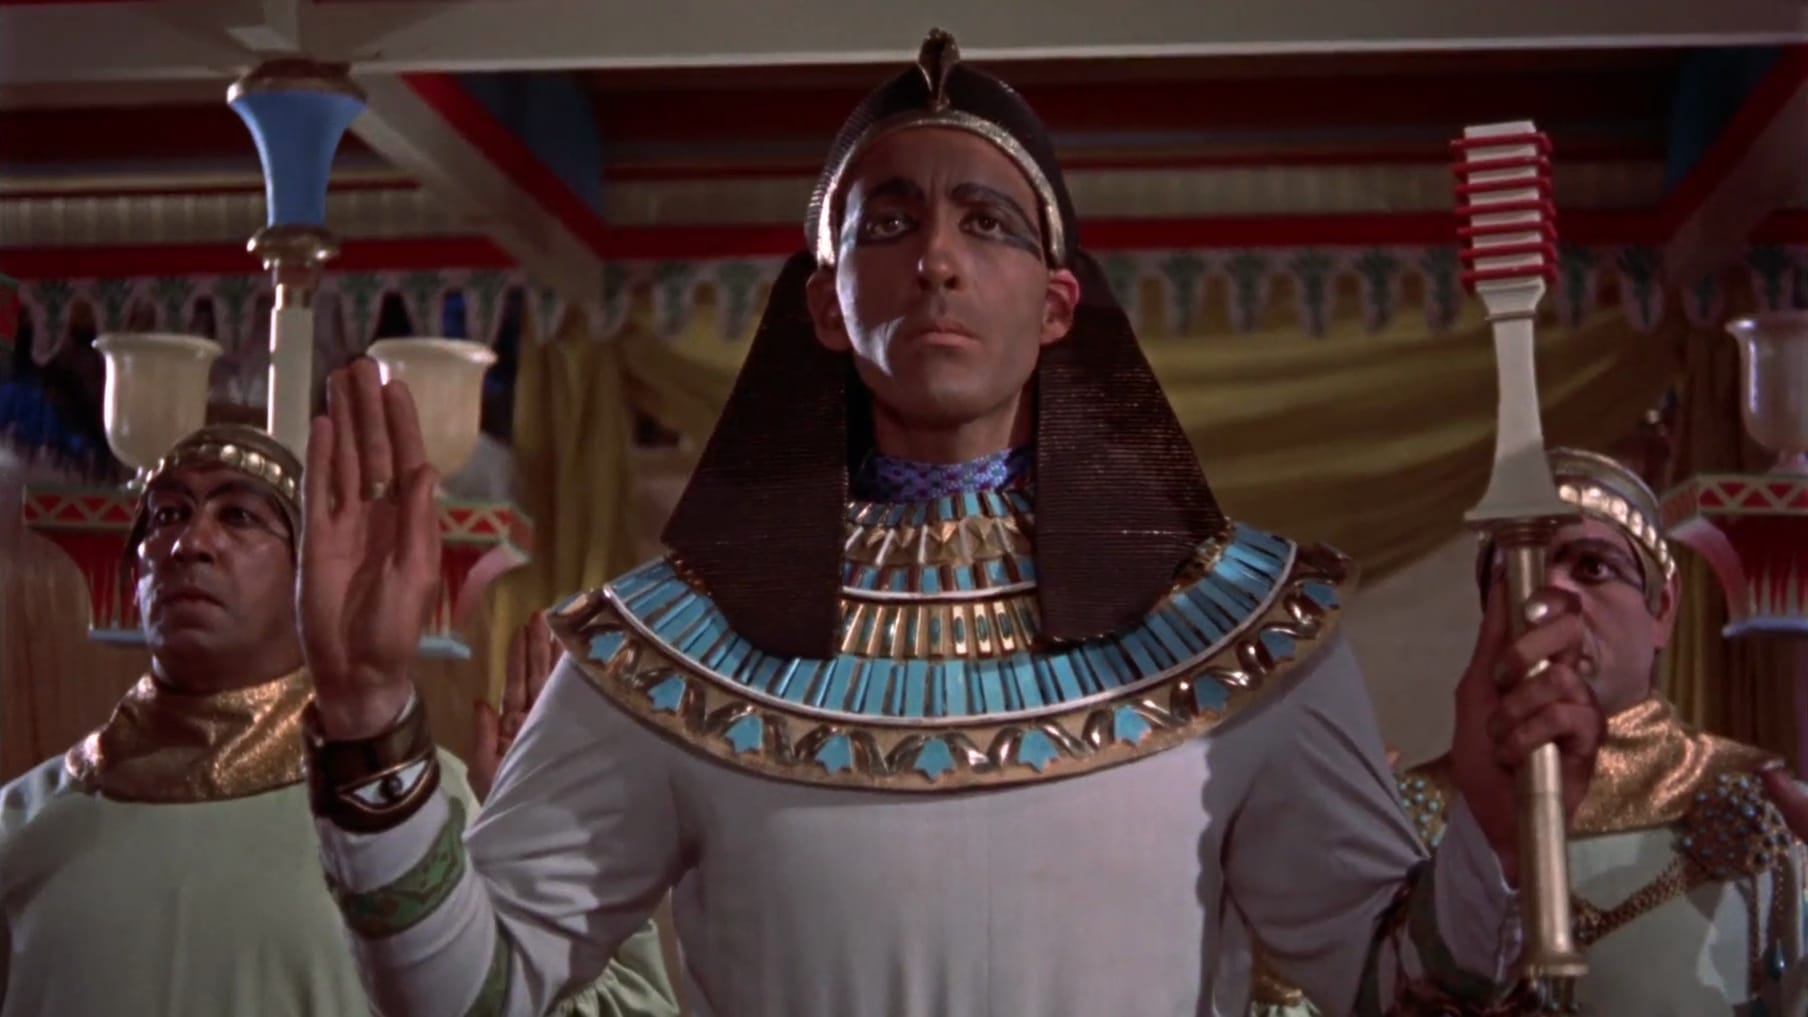 Image du film La Malédiction des pharaons rwfni7qcav6al3t0wrm3rw8sx4ujpg